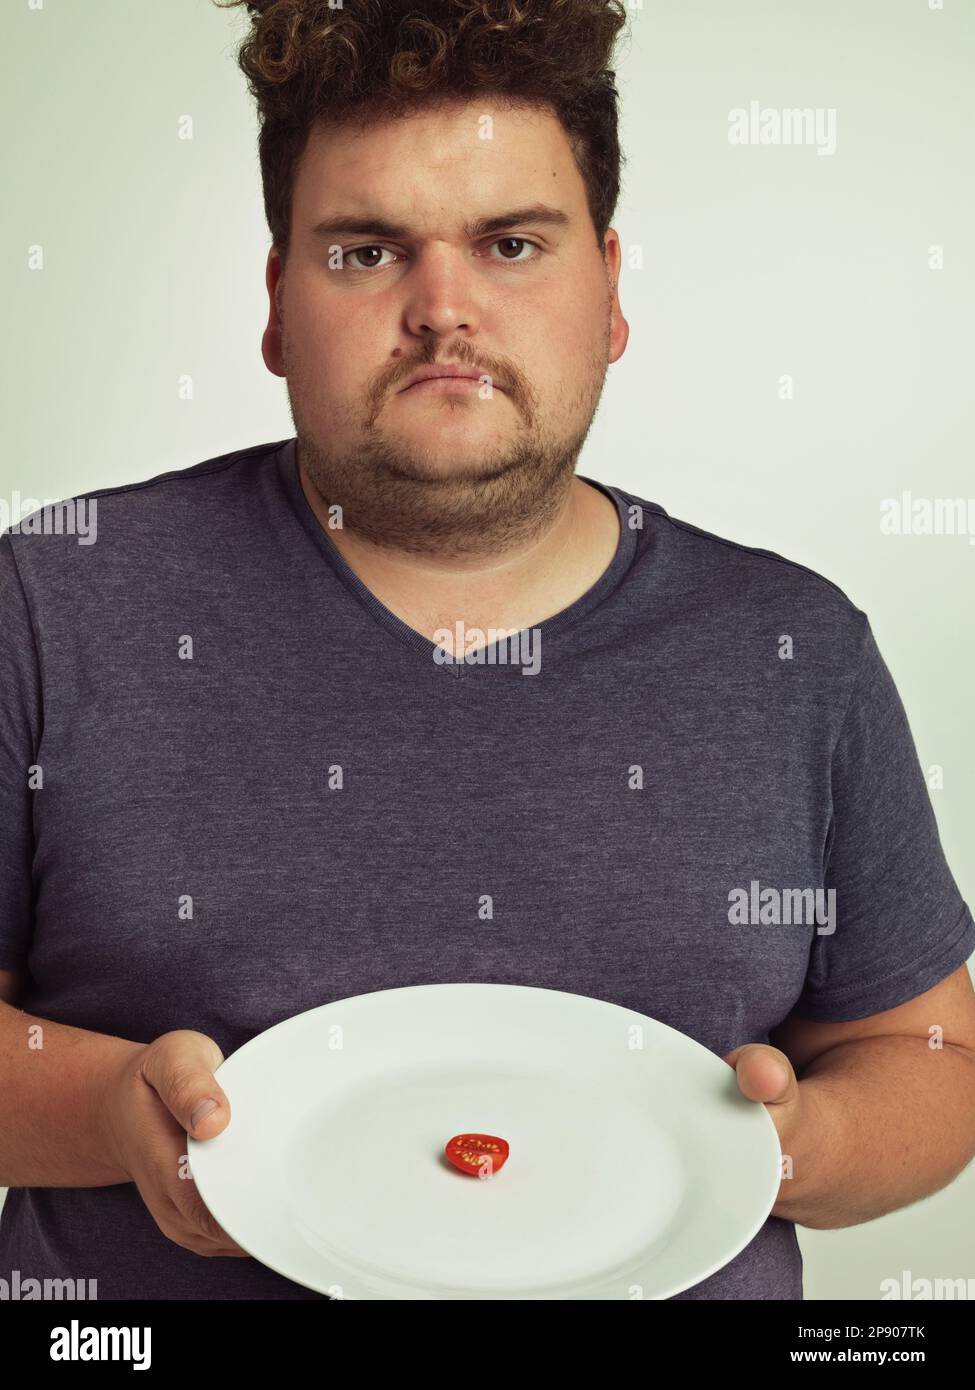 Das soll wohl ein Witz sein. Porträt eines übergewichtigen Mannes, der einen Teller mit einem kleinen Stück Tomate hält. Stockfoto